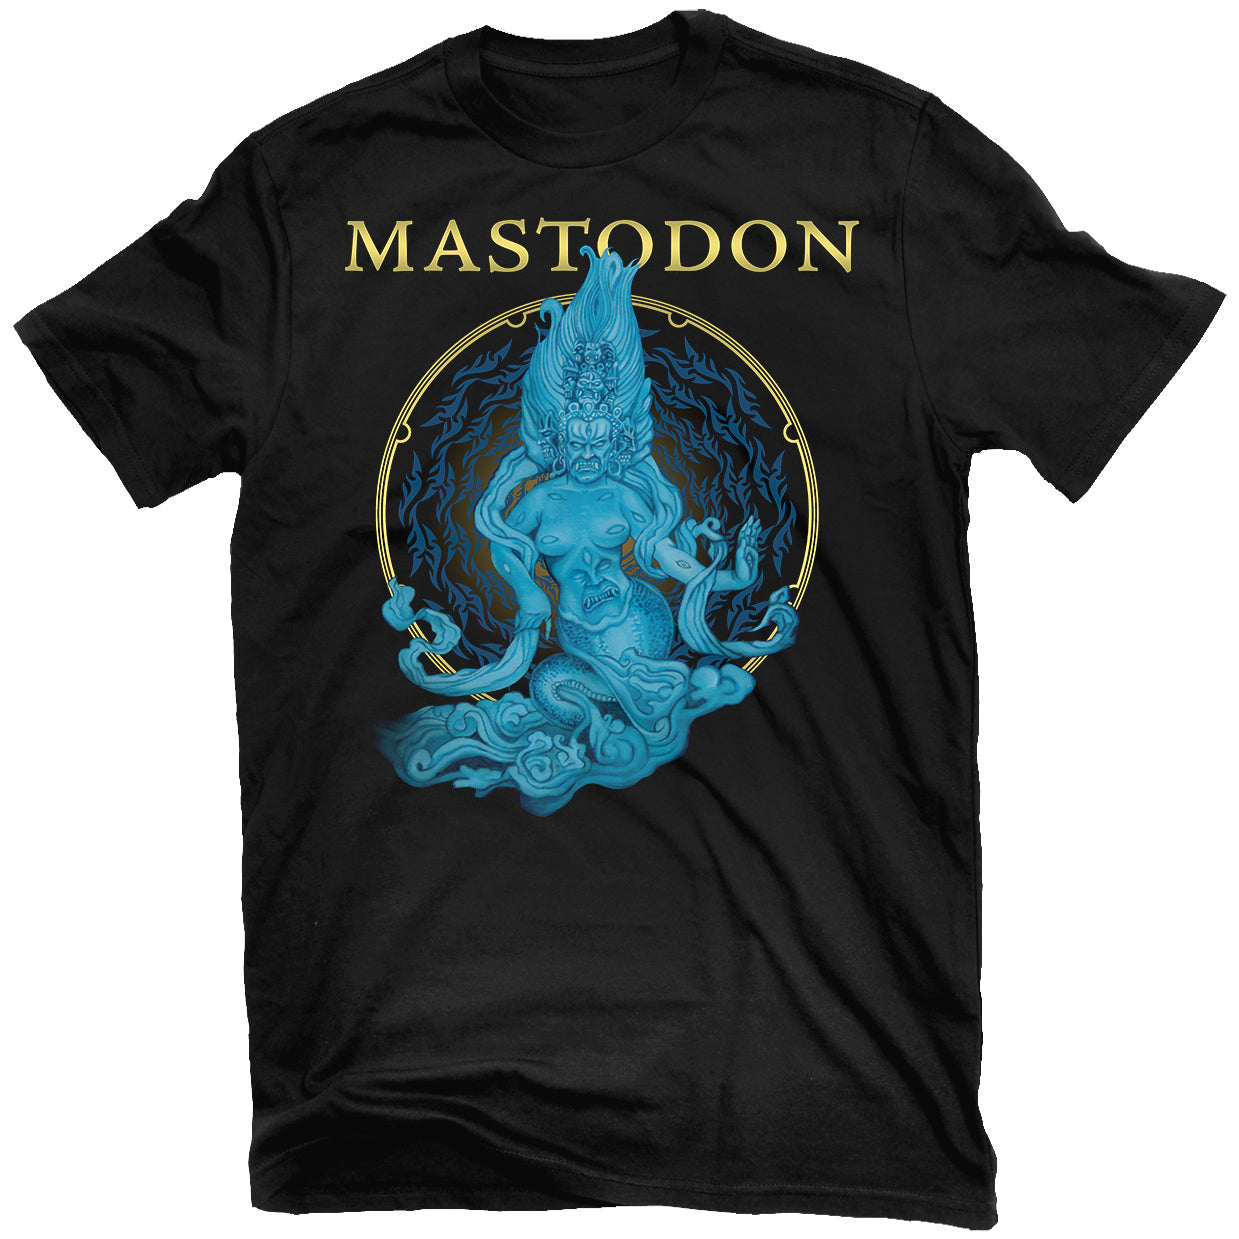 Mastodon "Sea Beast" T-Shirt